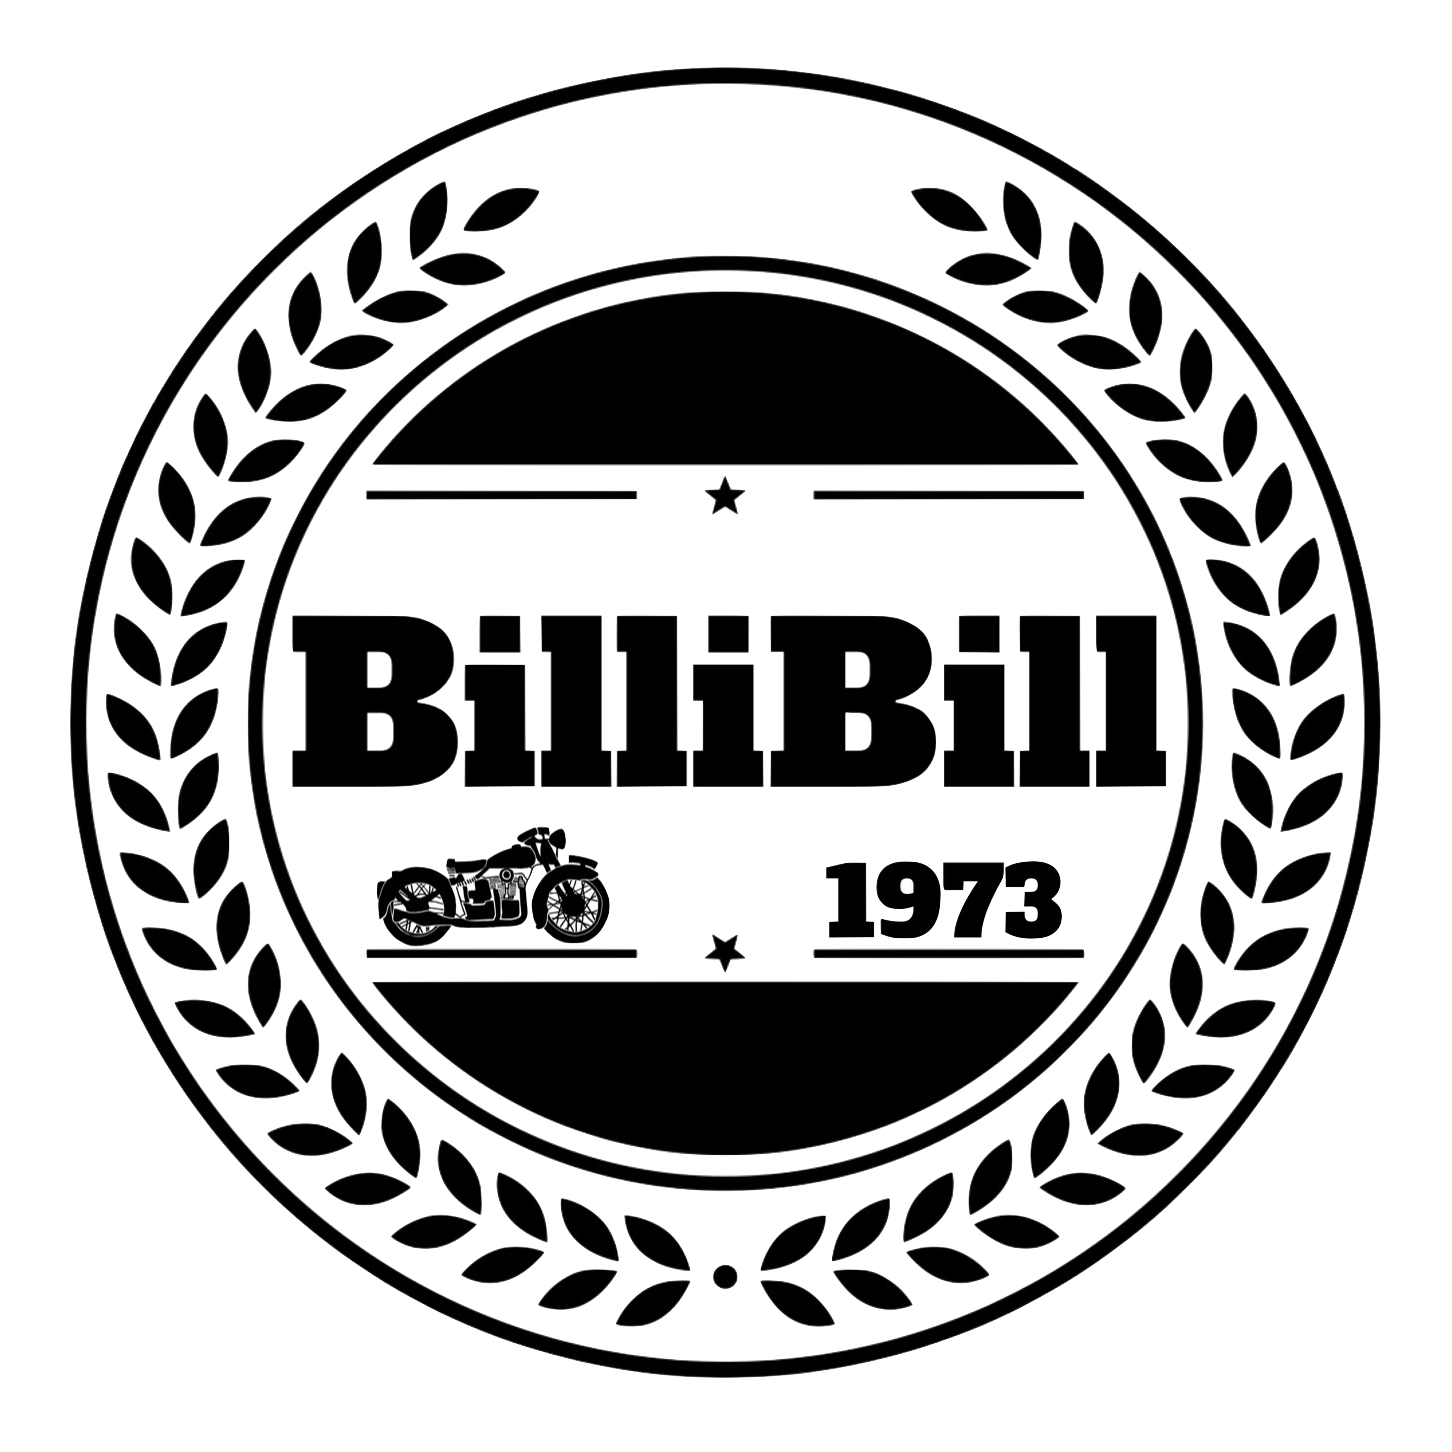 BilliBill